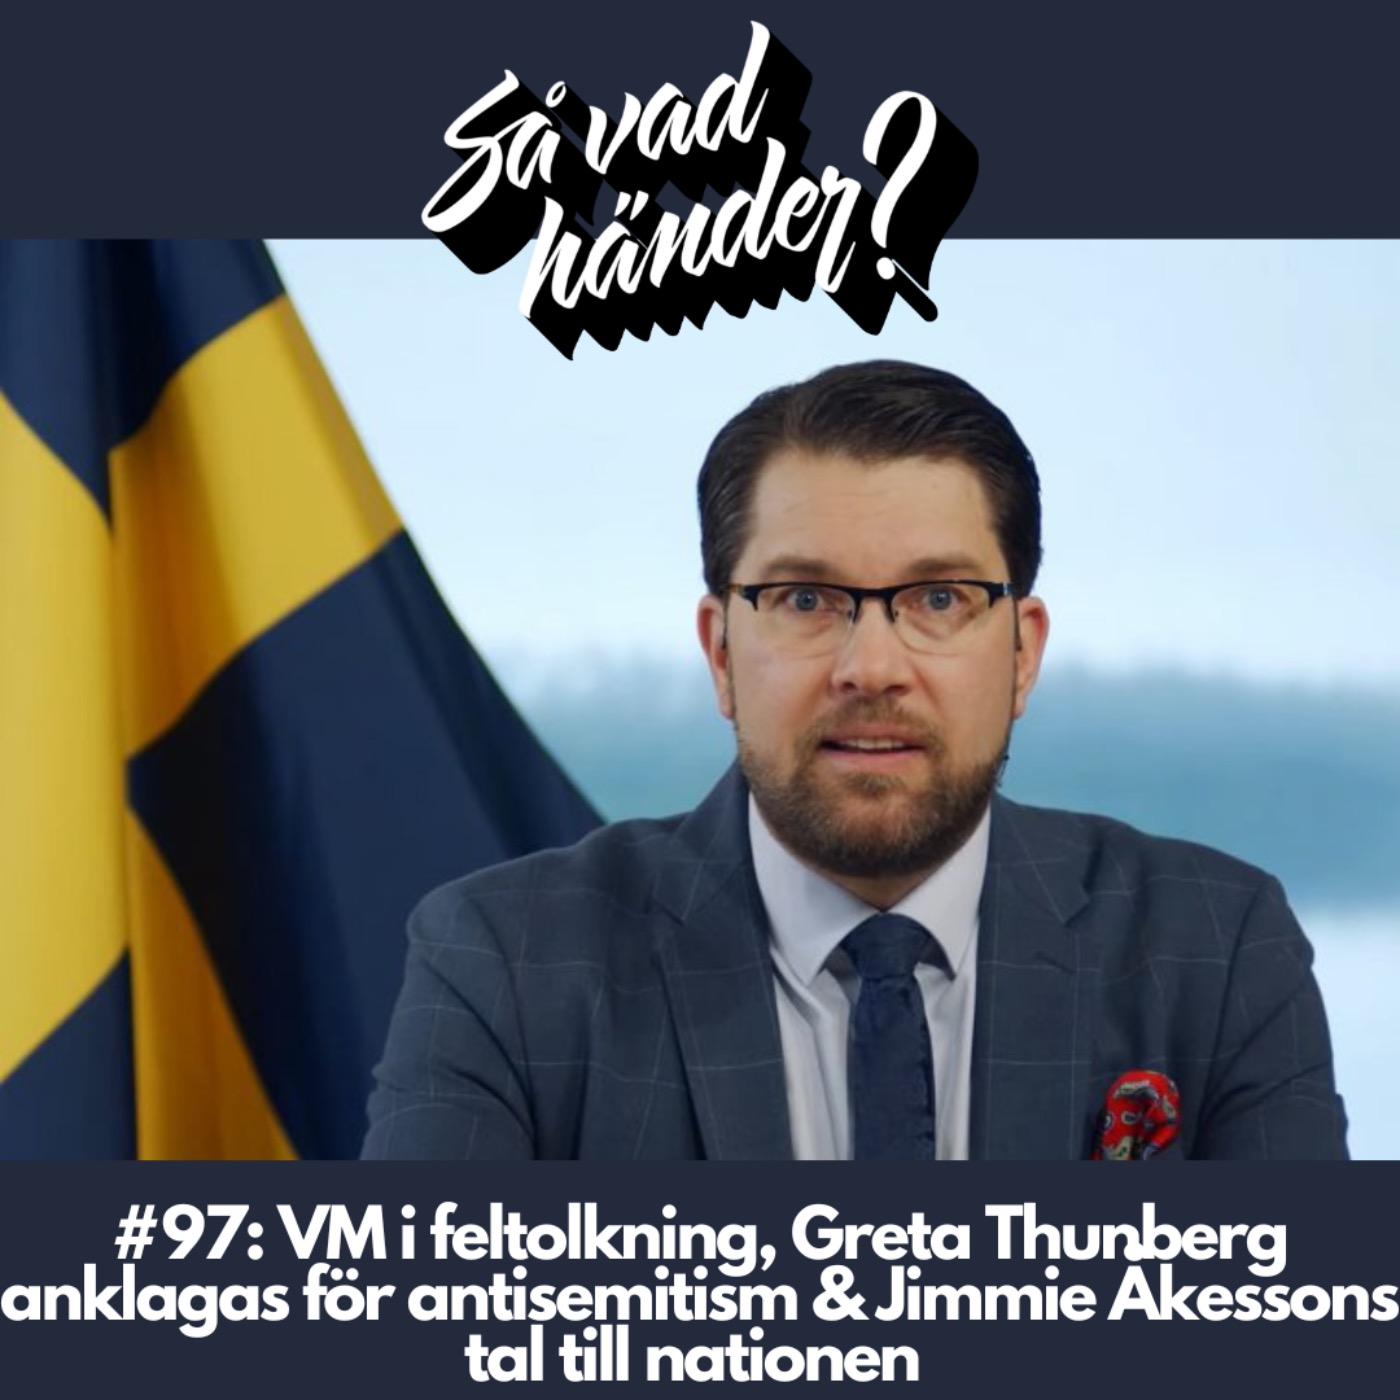 cover art for #97: VM i fultolkning, Greta Thunberg anklagas för antisemitism & Jimmie Åkessons tal till nationen 